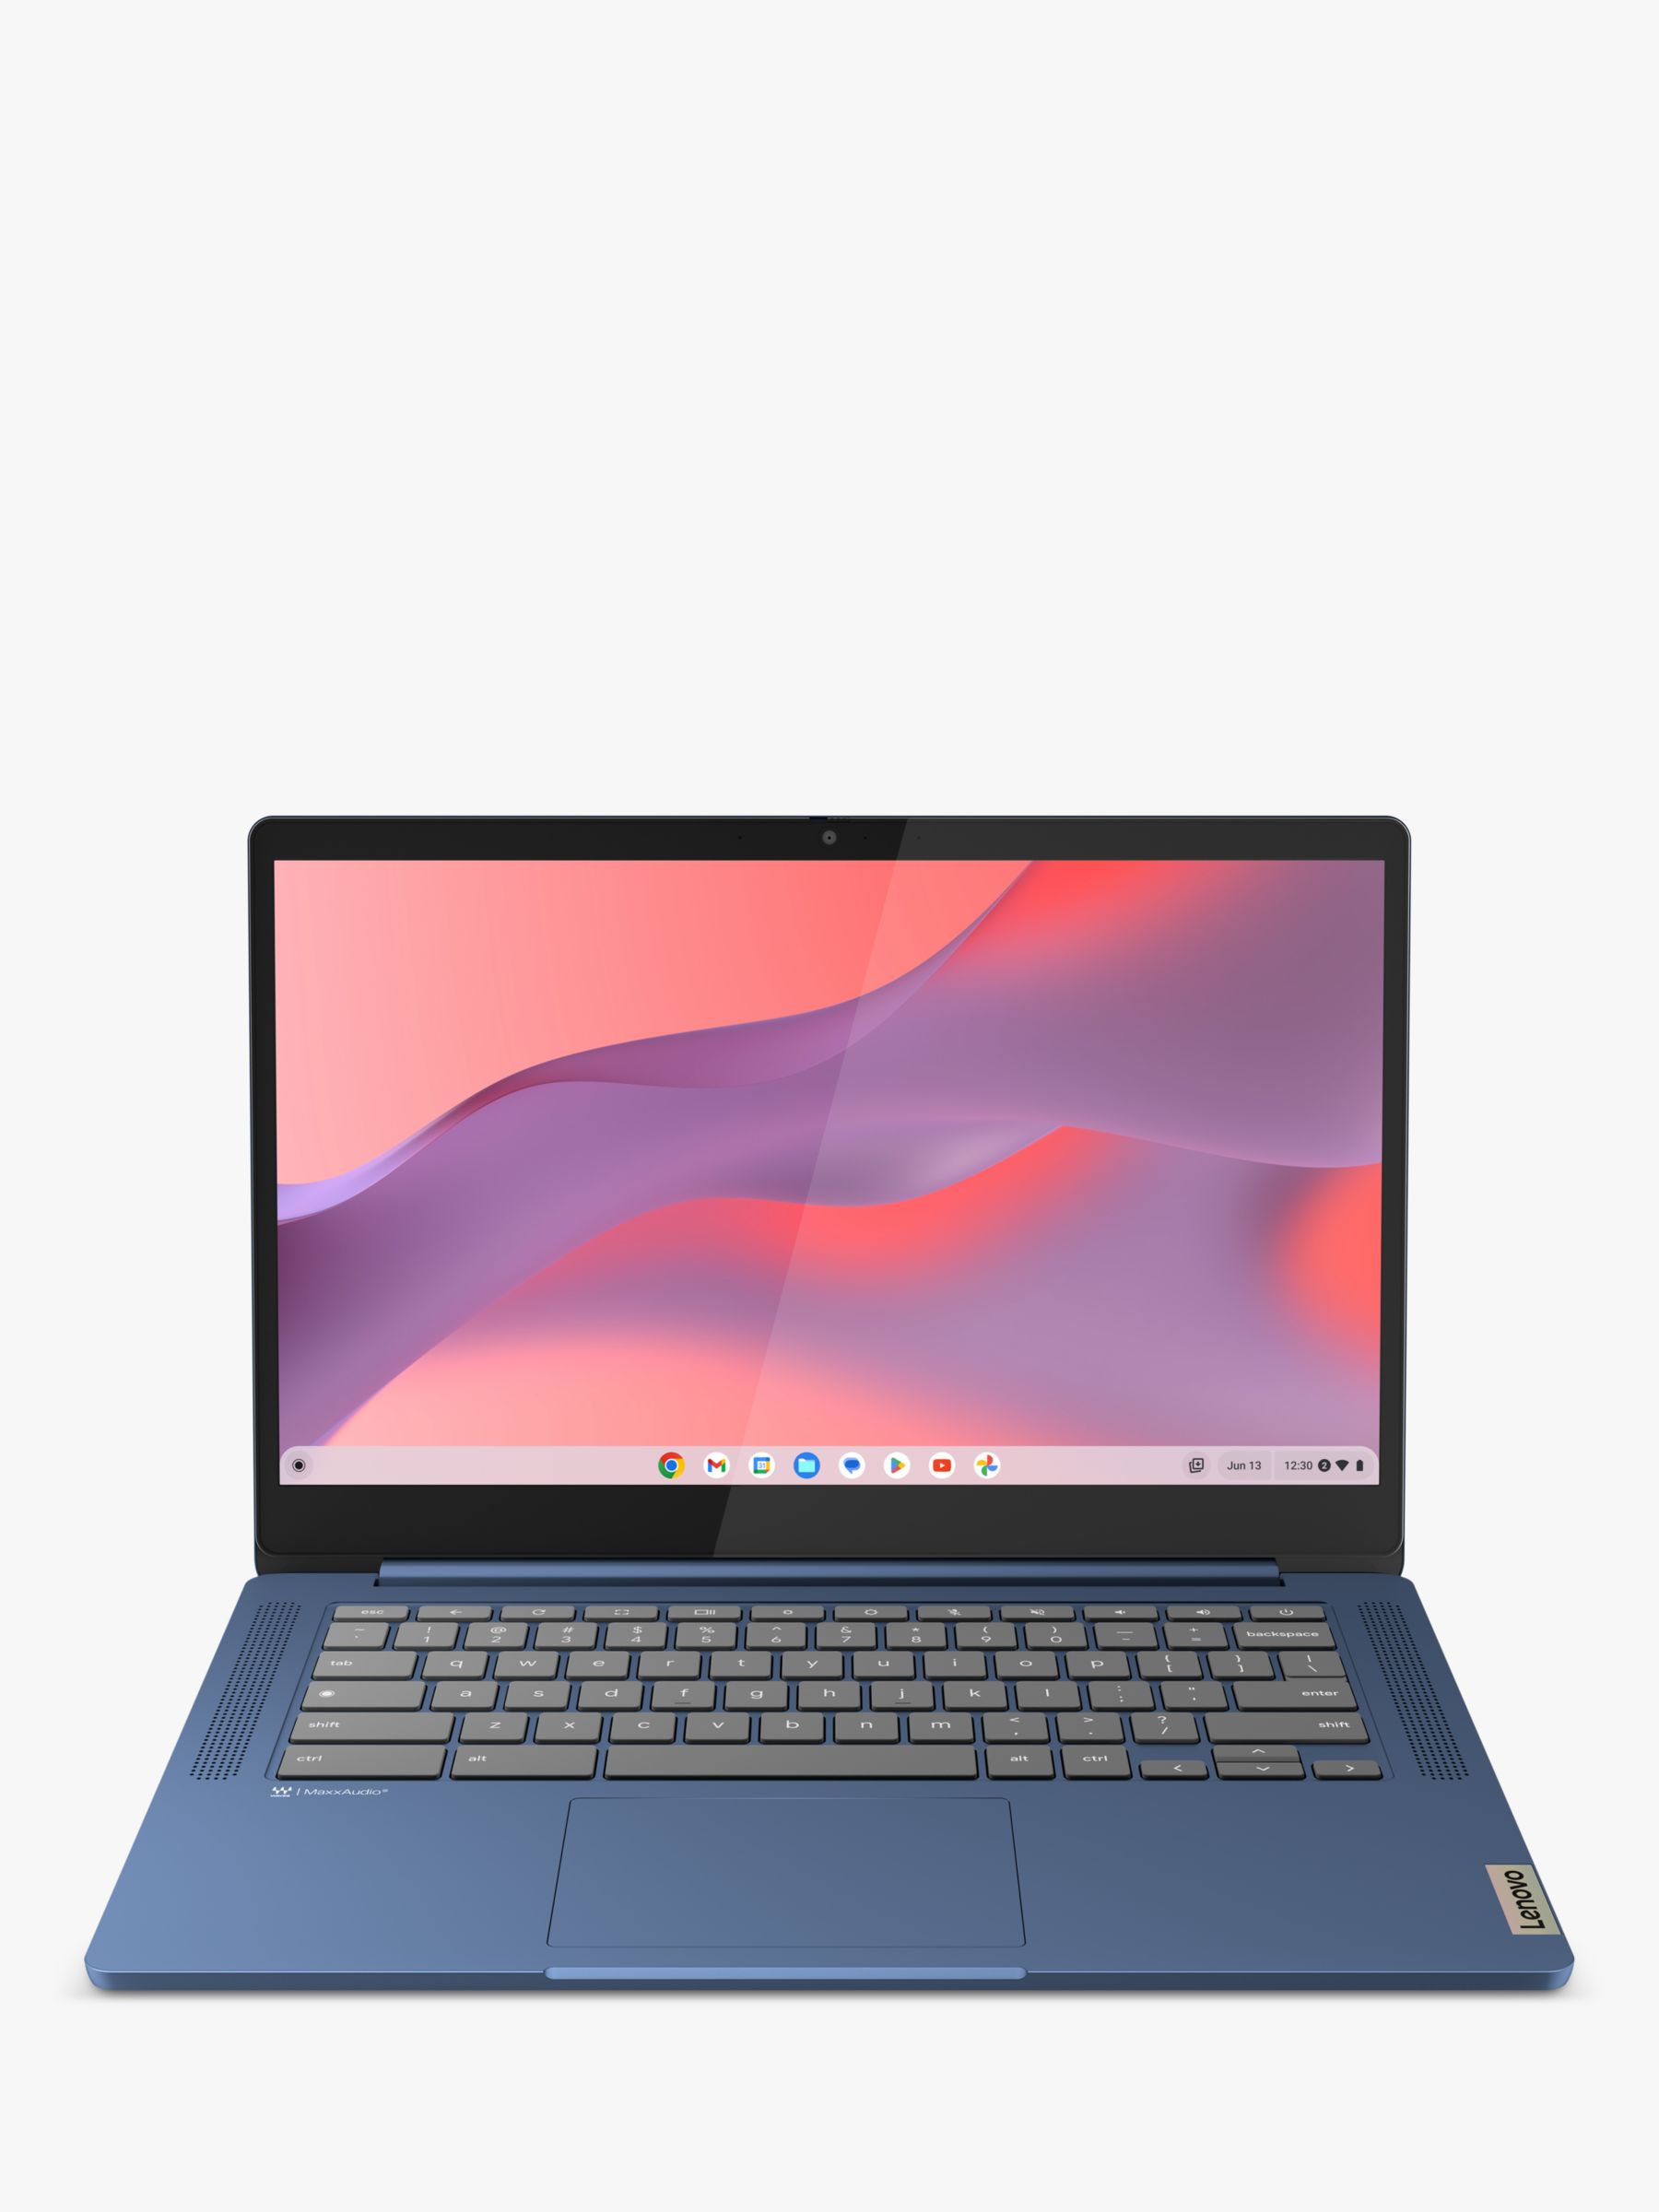 Lenovo IdeaPad Slim 3 Chromebook - 14in FHD, MediaTek Kompanio 520, 8GB  RAM, 128GB eMMC - Abyss Blue